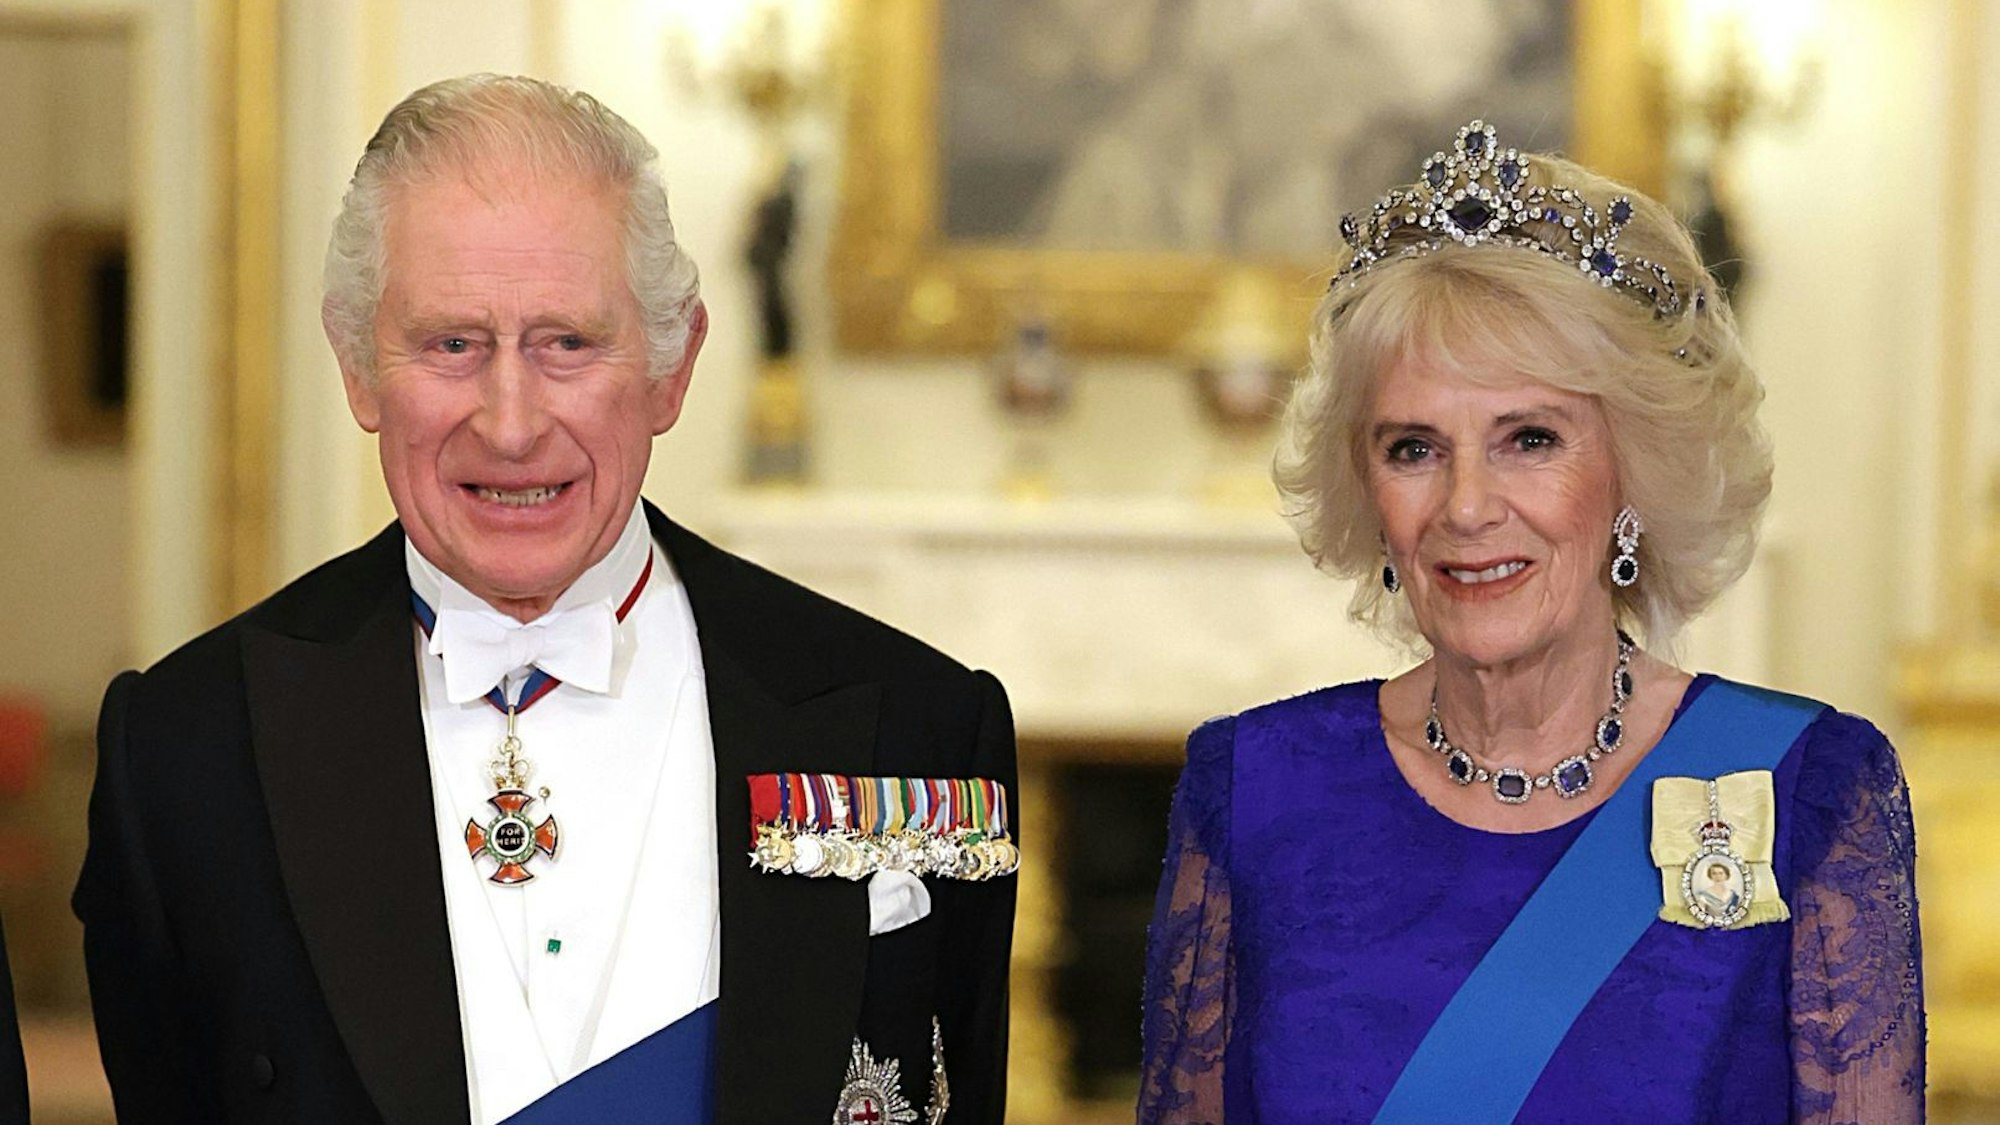 König Charles III. und Königsgemahlin Camilla beim Staatsbesuch in festlicher Kleidung.